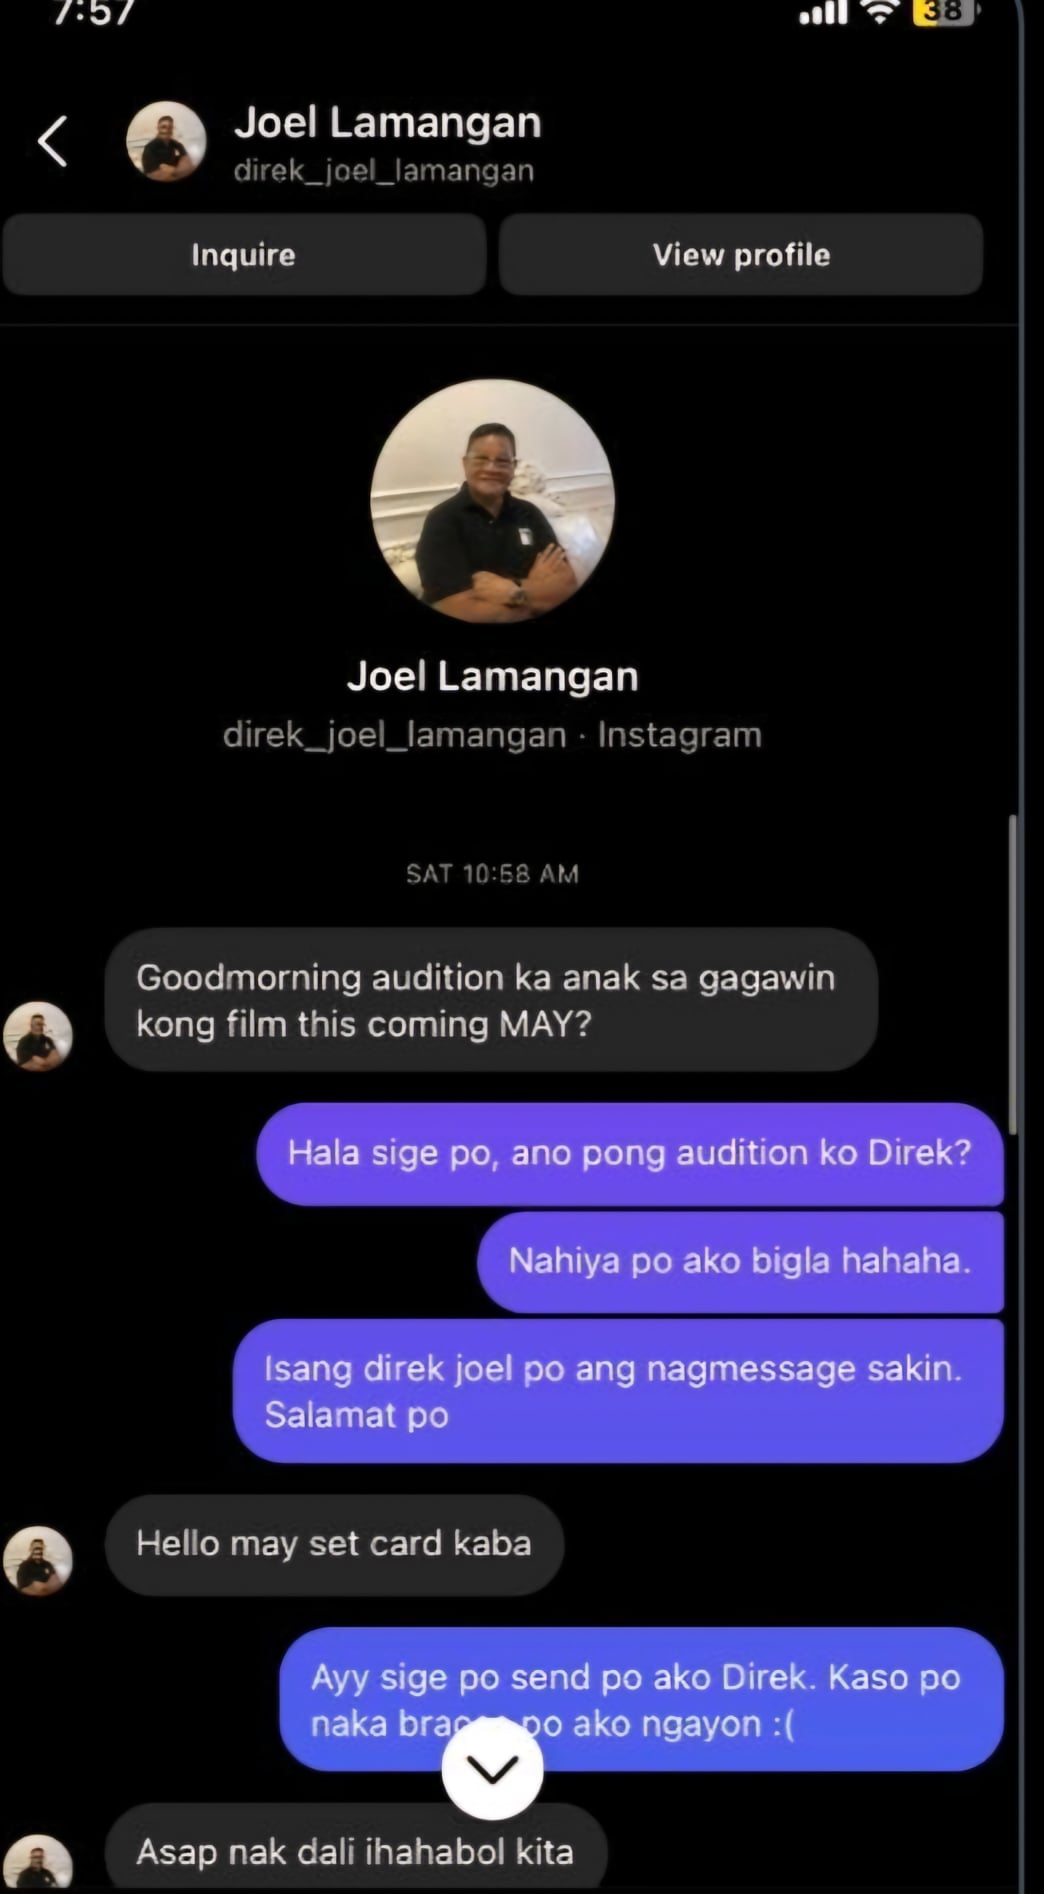 fake joel lamangan account